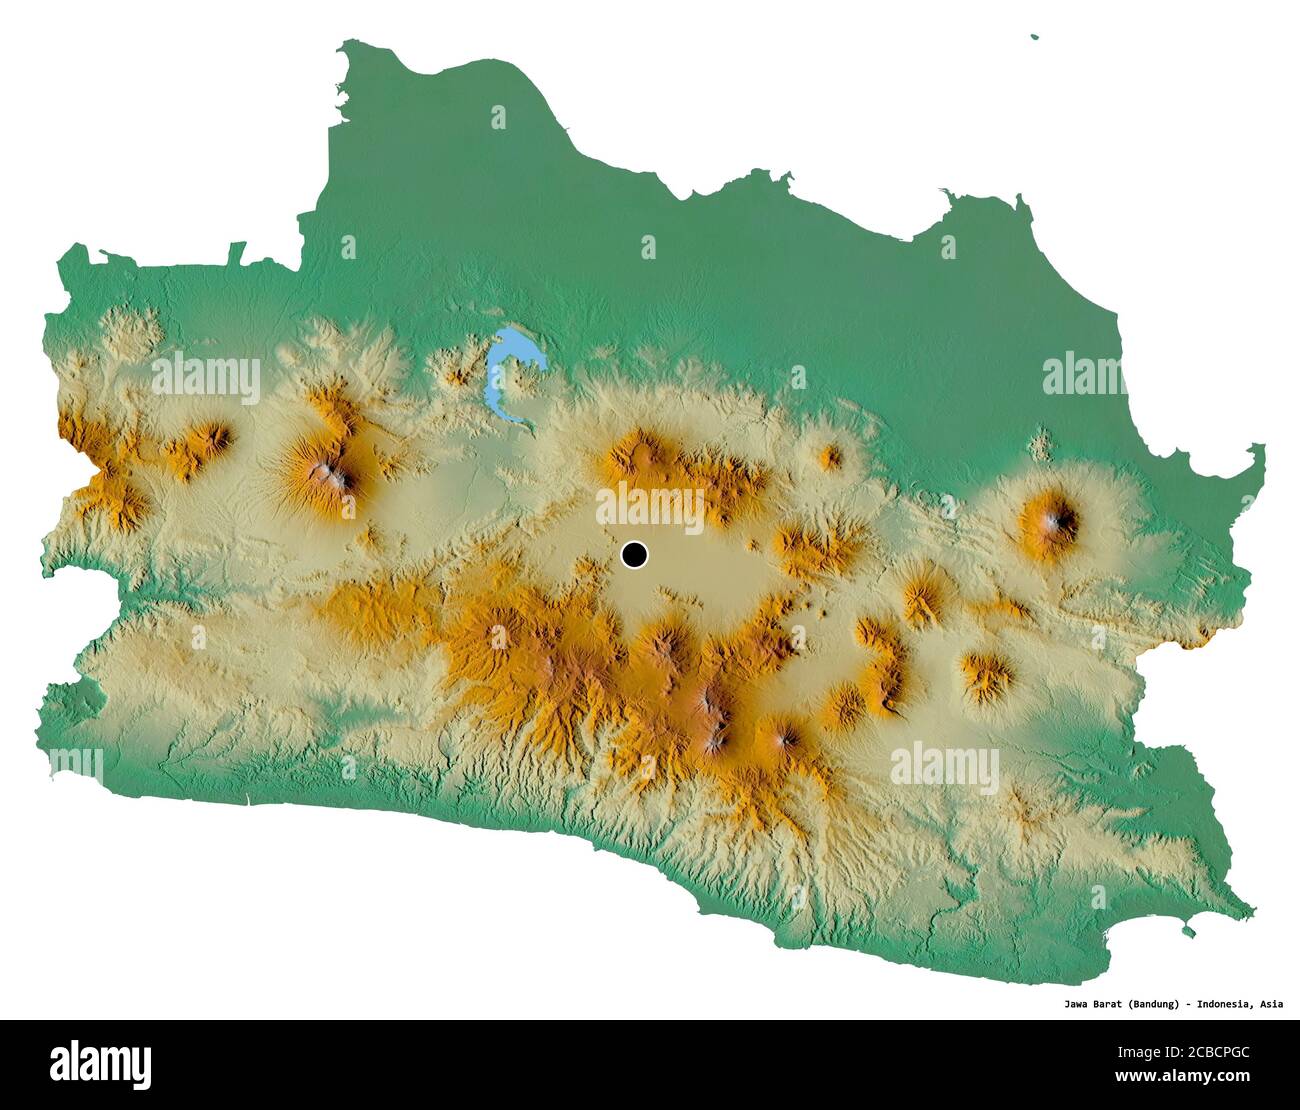 Forme de Jawa Barat, province d'Indonésie, avec sa capitale isolée sur fond blanc. Carte topographique de relief. Rendu 3D Banque D'Images